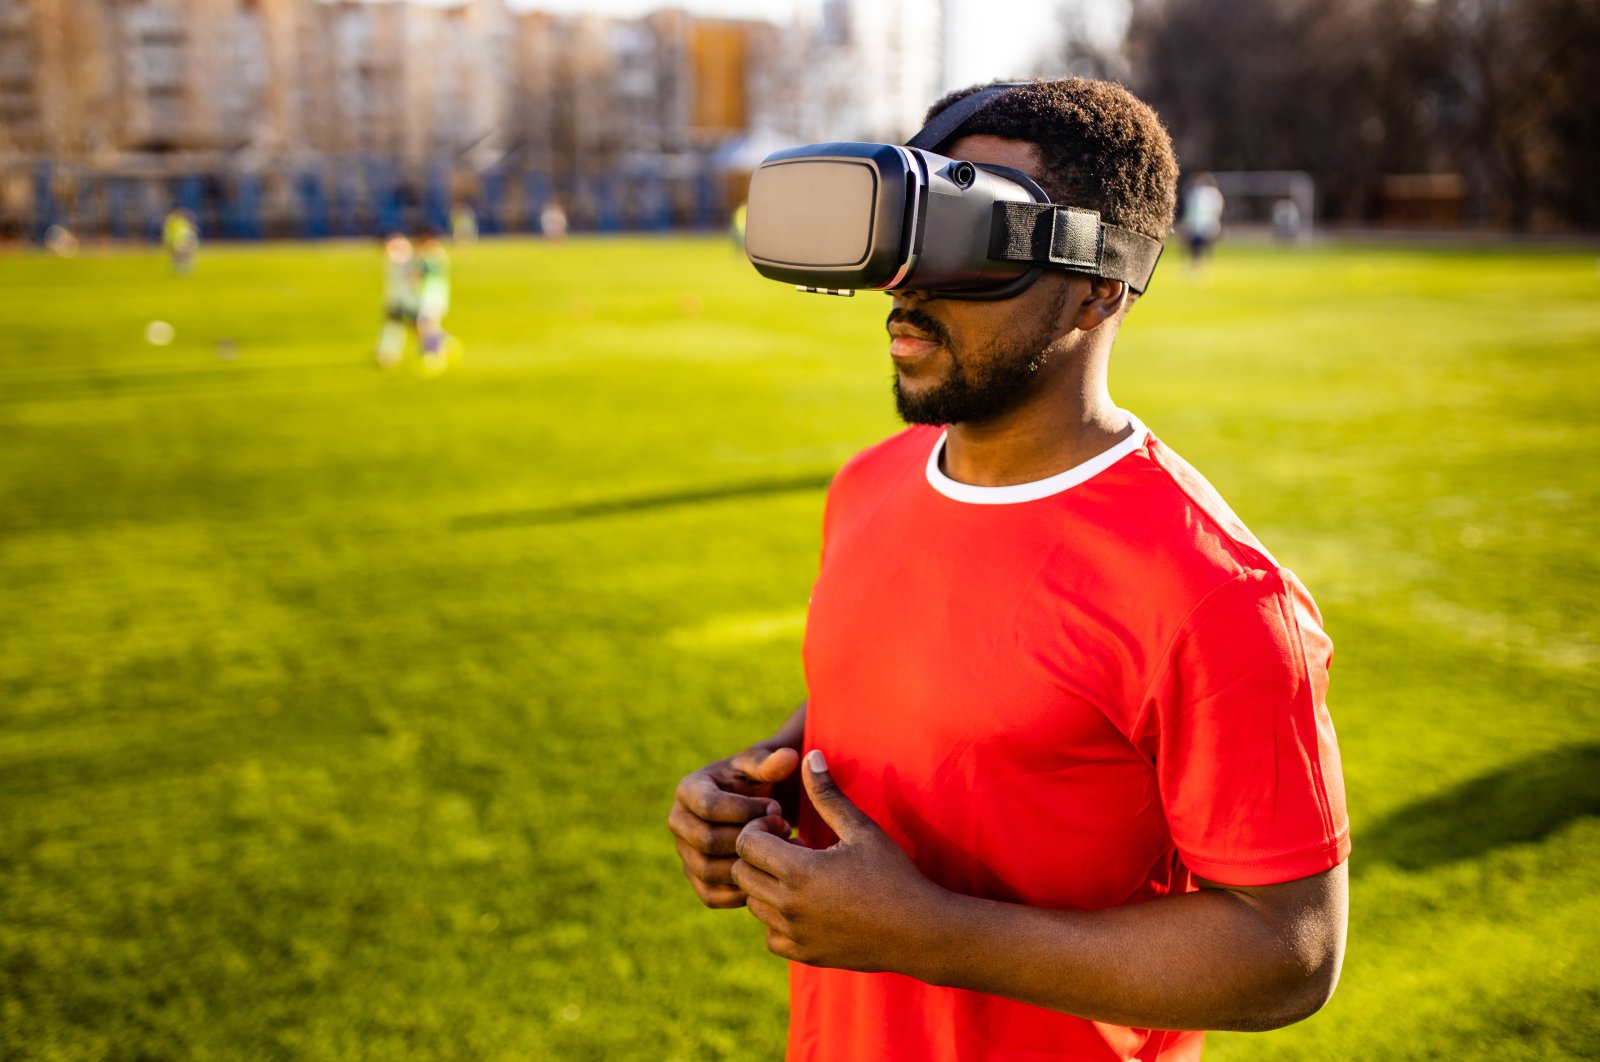 VR memimpin dengan meningkatkan sepak bola di tengah pembatasan